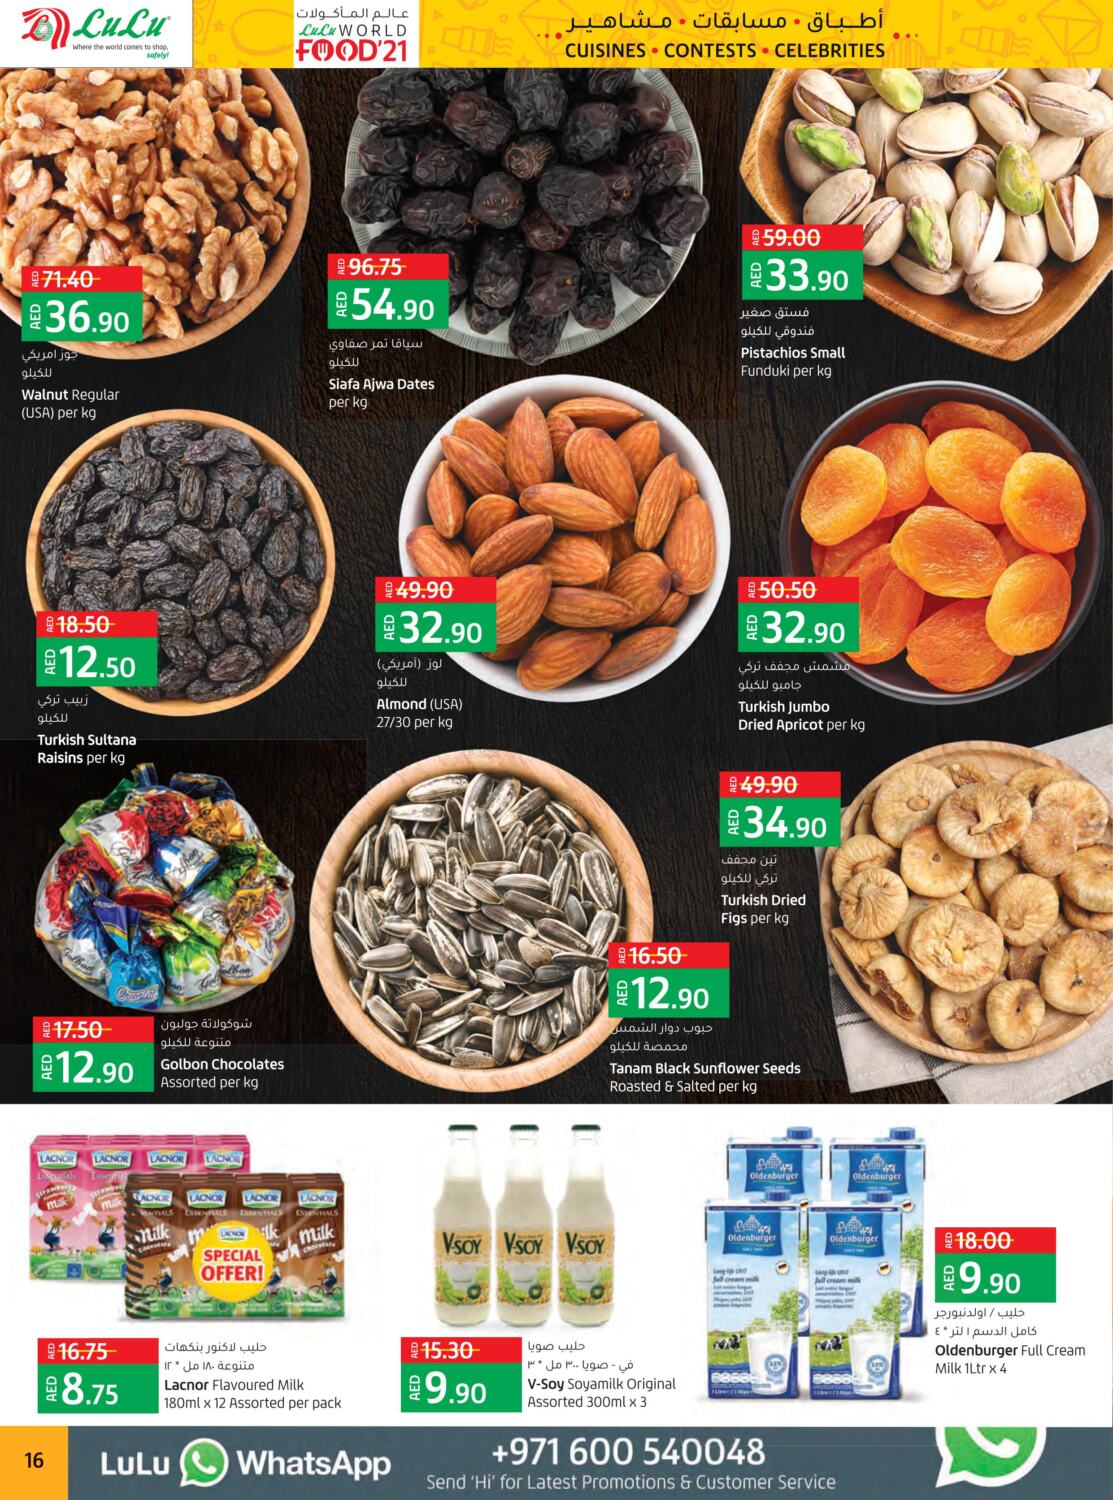 World Food 21 - Abu Dhabi & Al Ain from Lulu until 9th March - Lulu UAE  Offers & Promotions